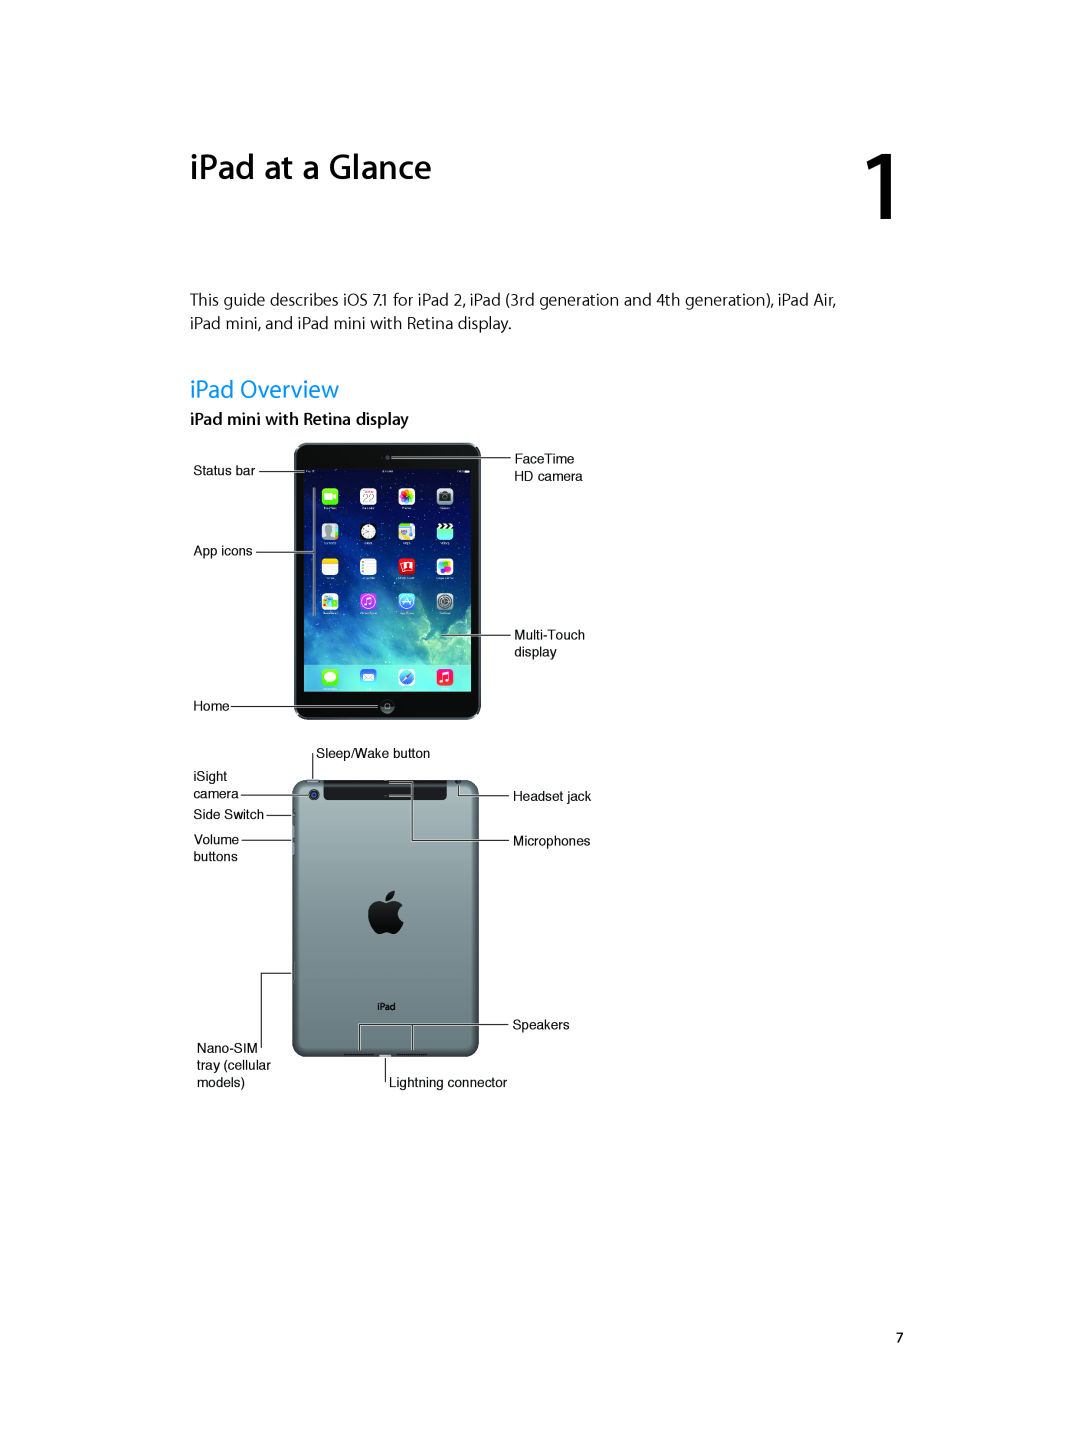 Apple ME856LL/A, MF544LL/A, MF519LL/A, MF116LL/A, MF123LL/A, ME860LL/A, MF066LL/A, MF074LL/A iPad at a Glance, iPad Overview 